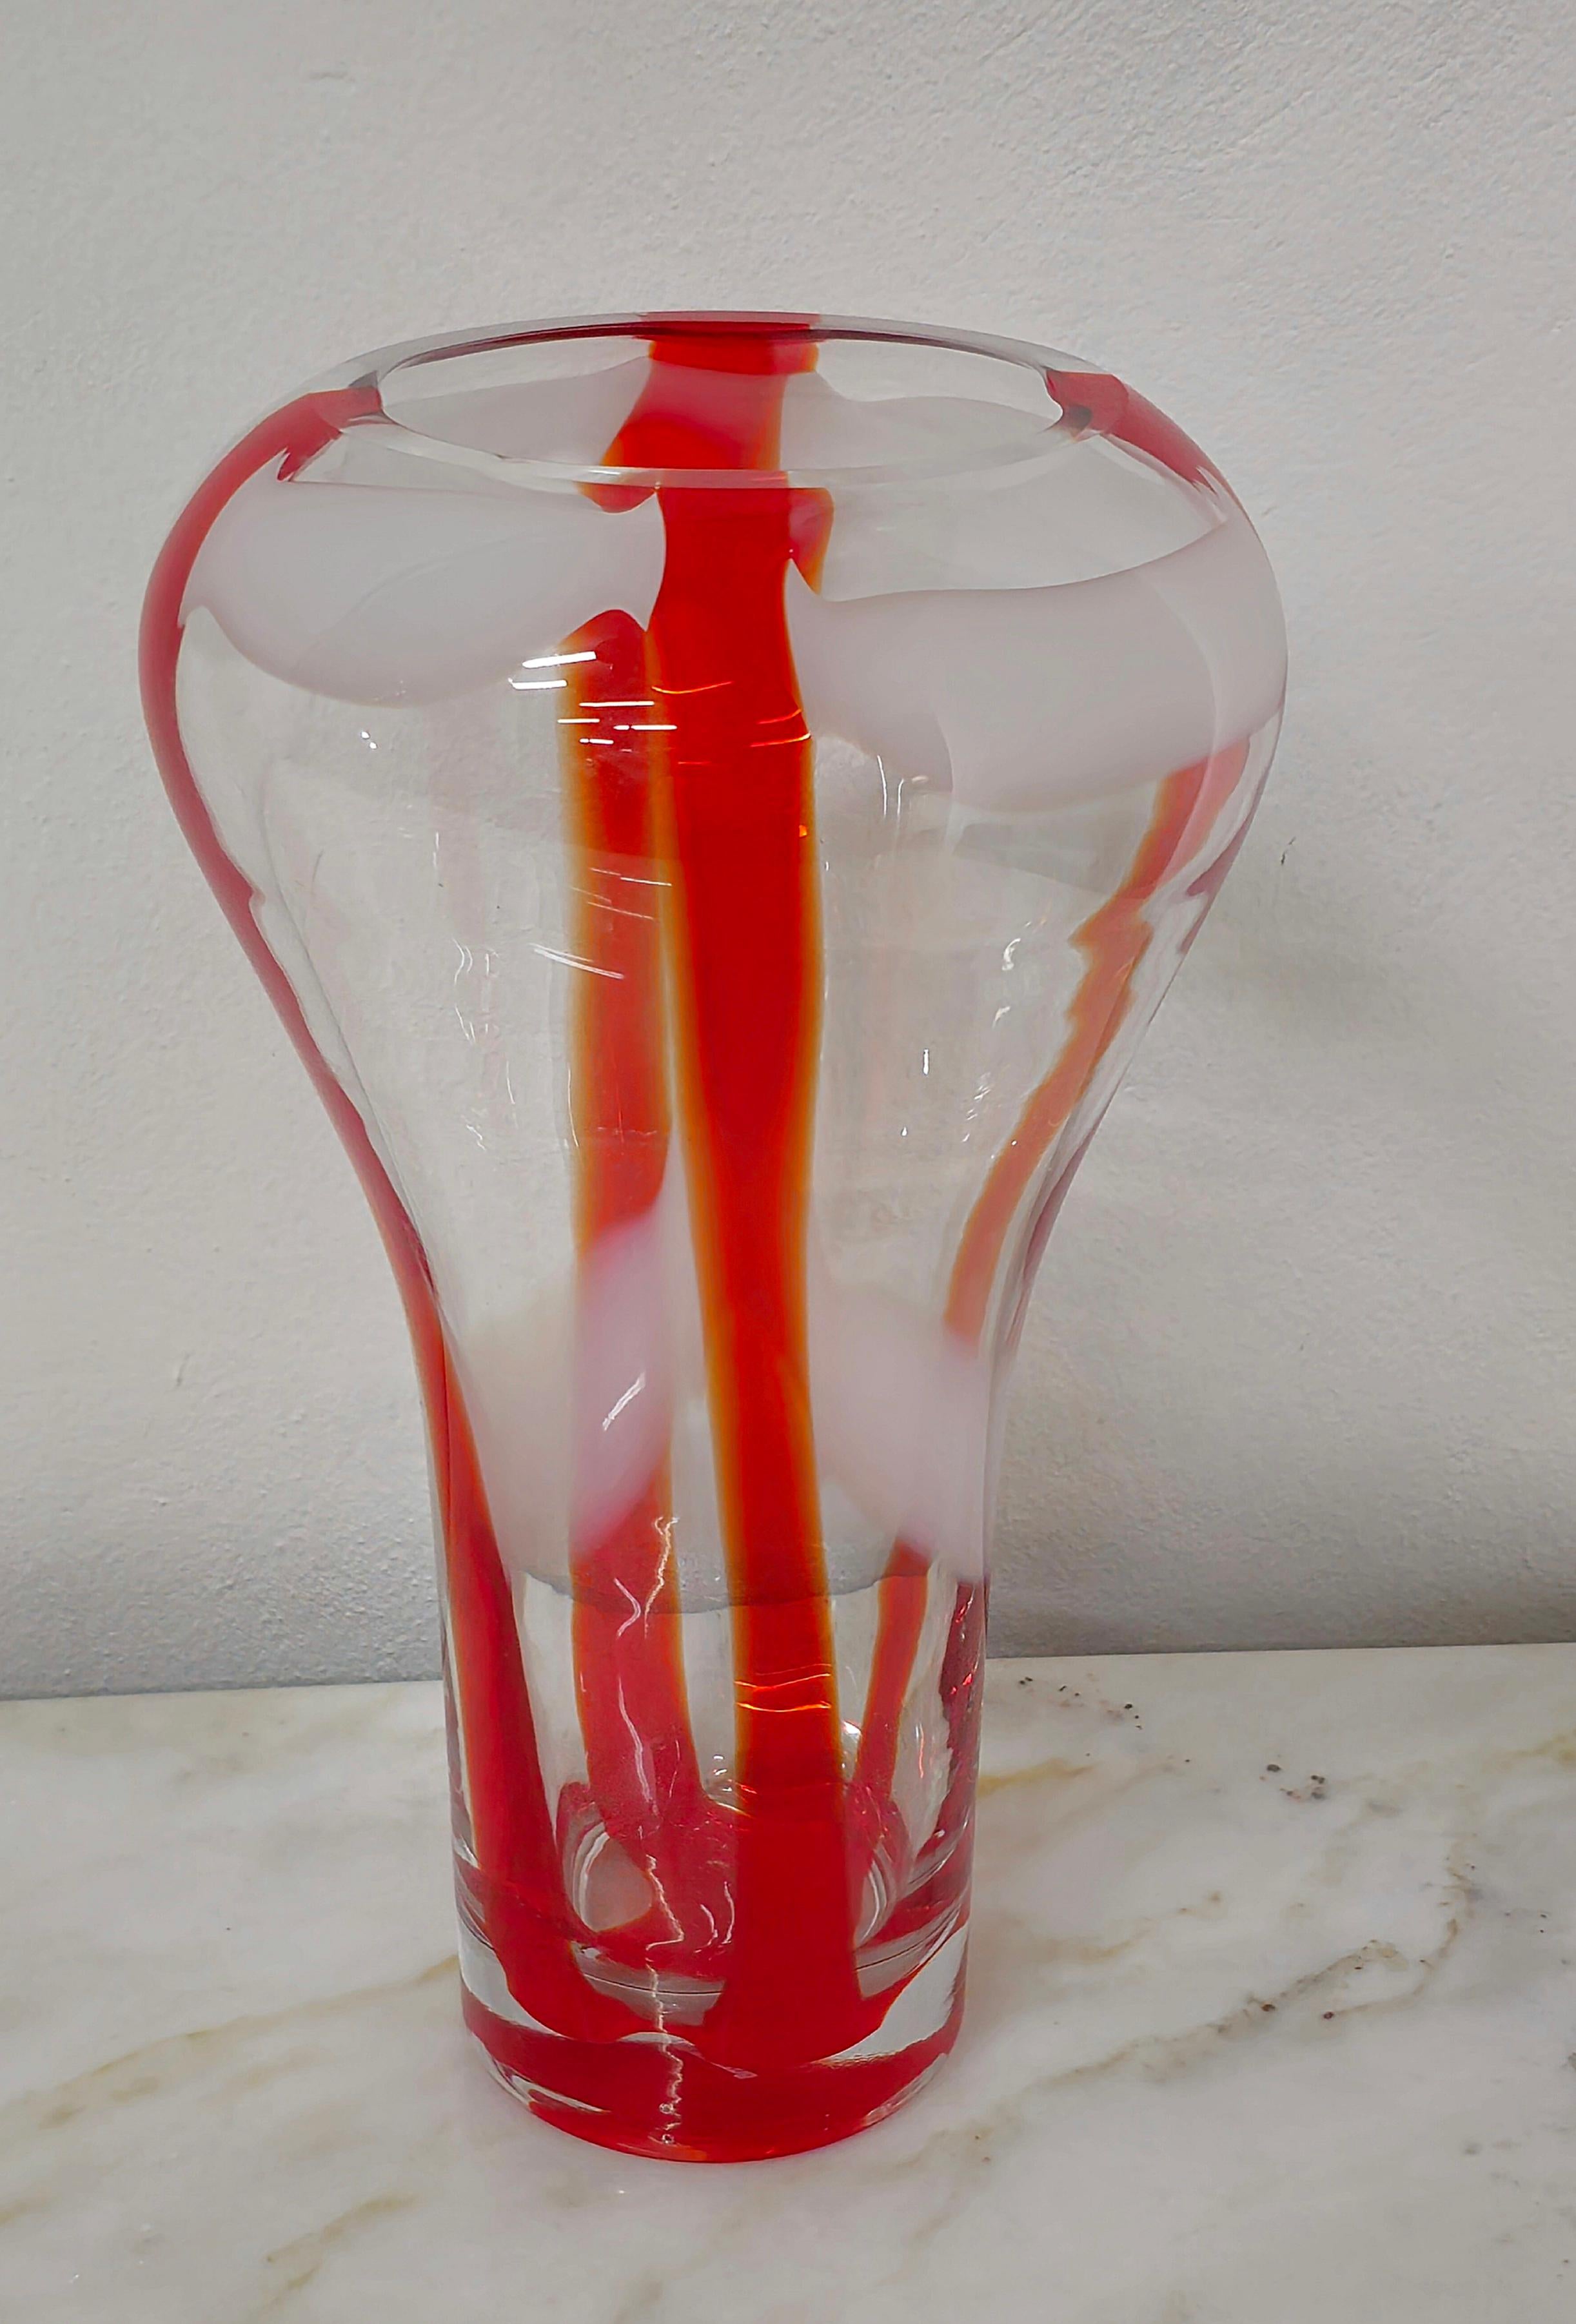 Decorative Object Vase Guzzini Murano Glass Midcentury Italian Design 1970s For Sale 3